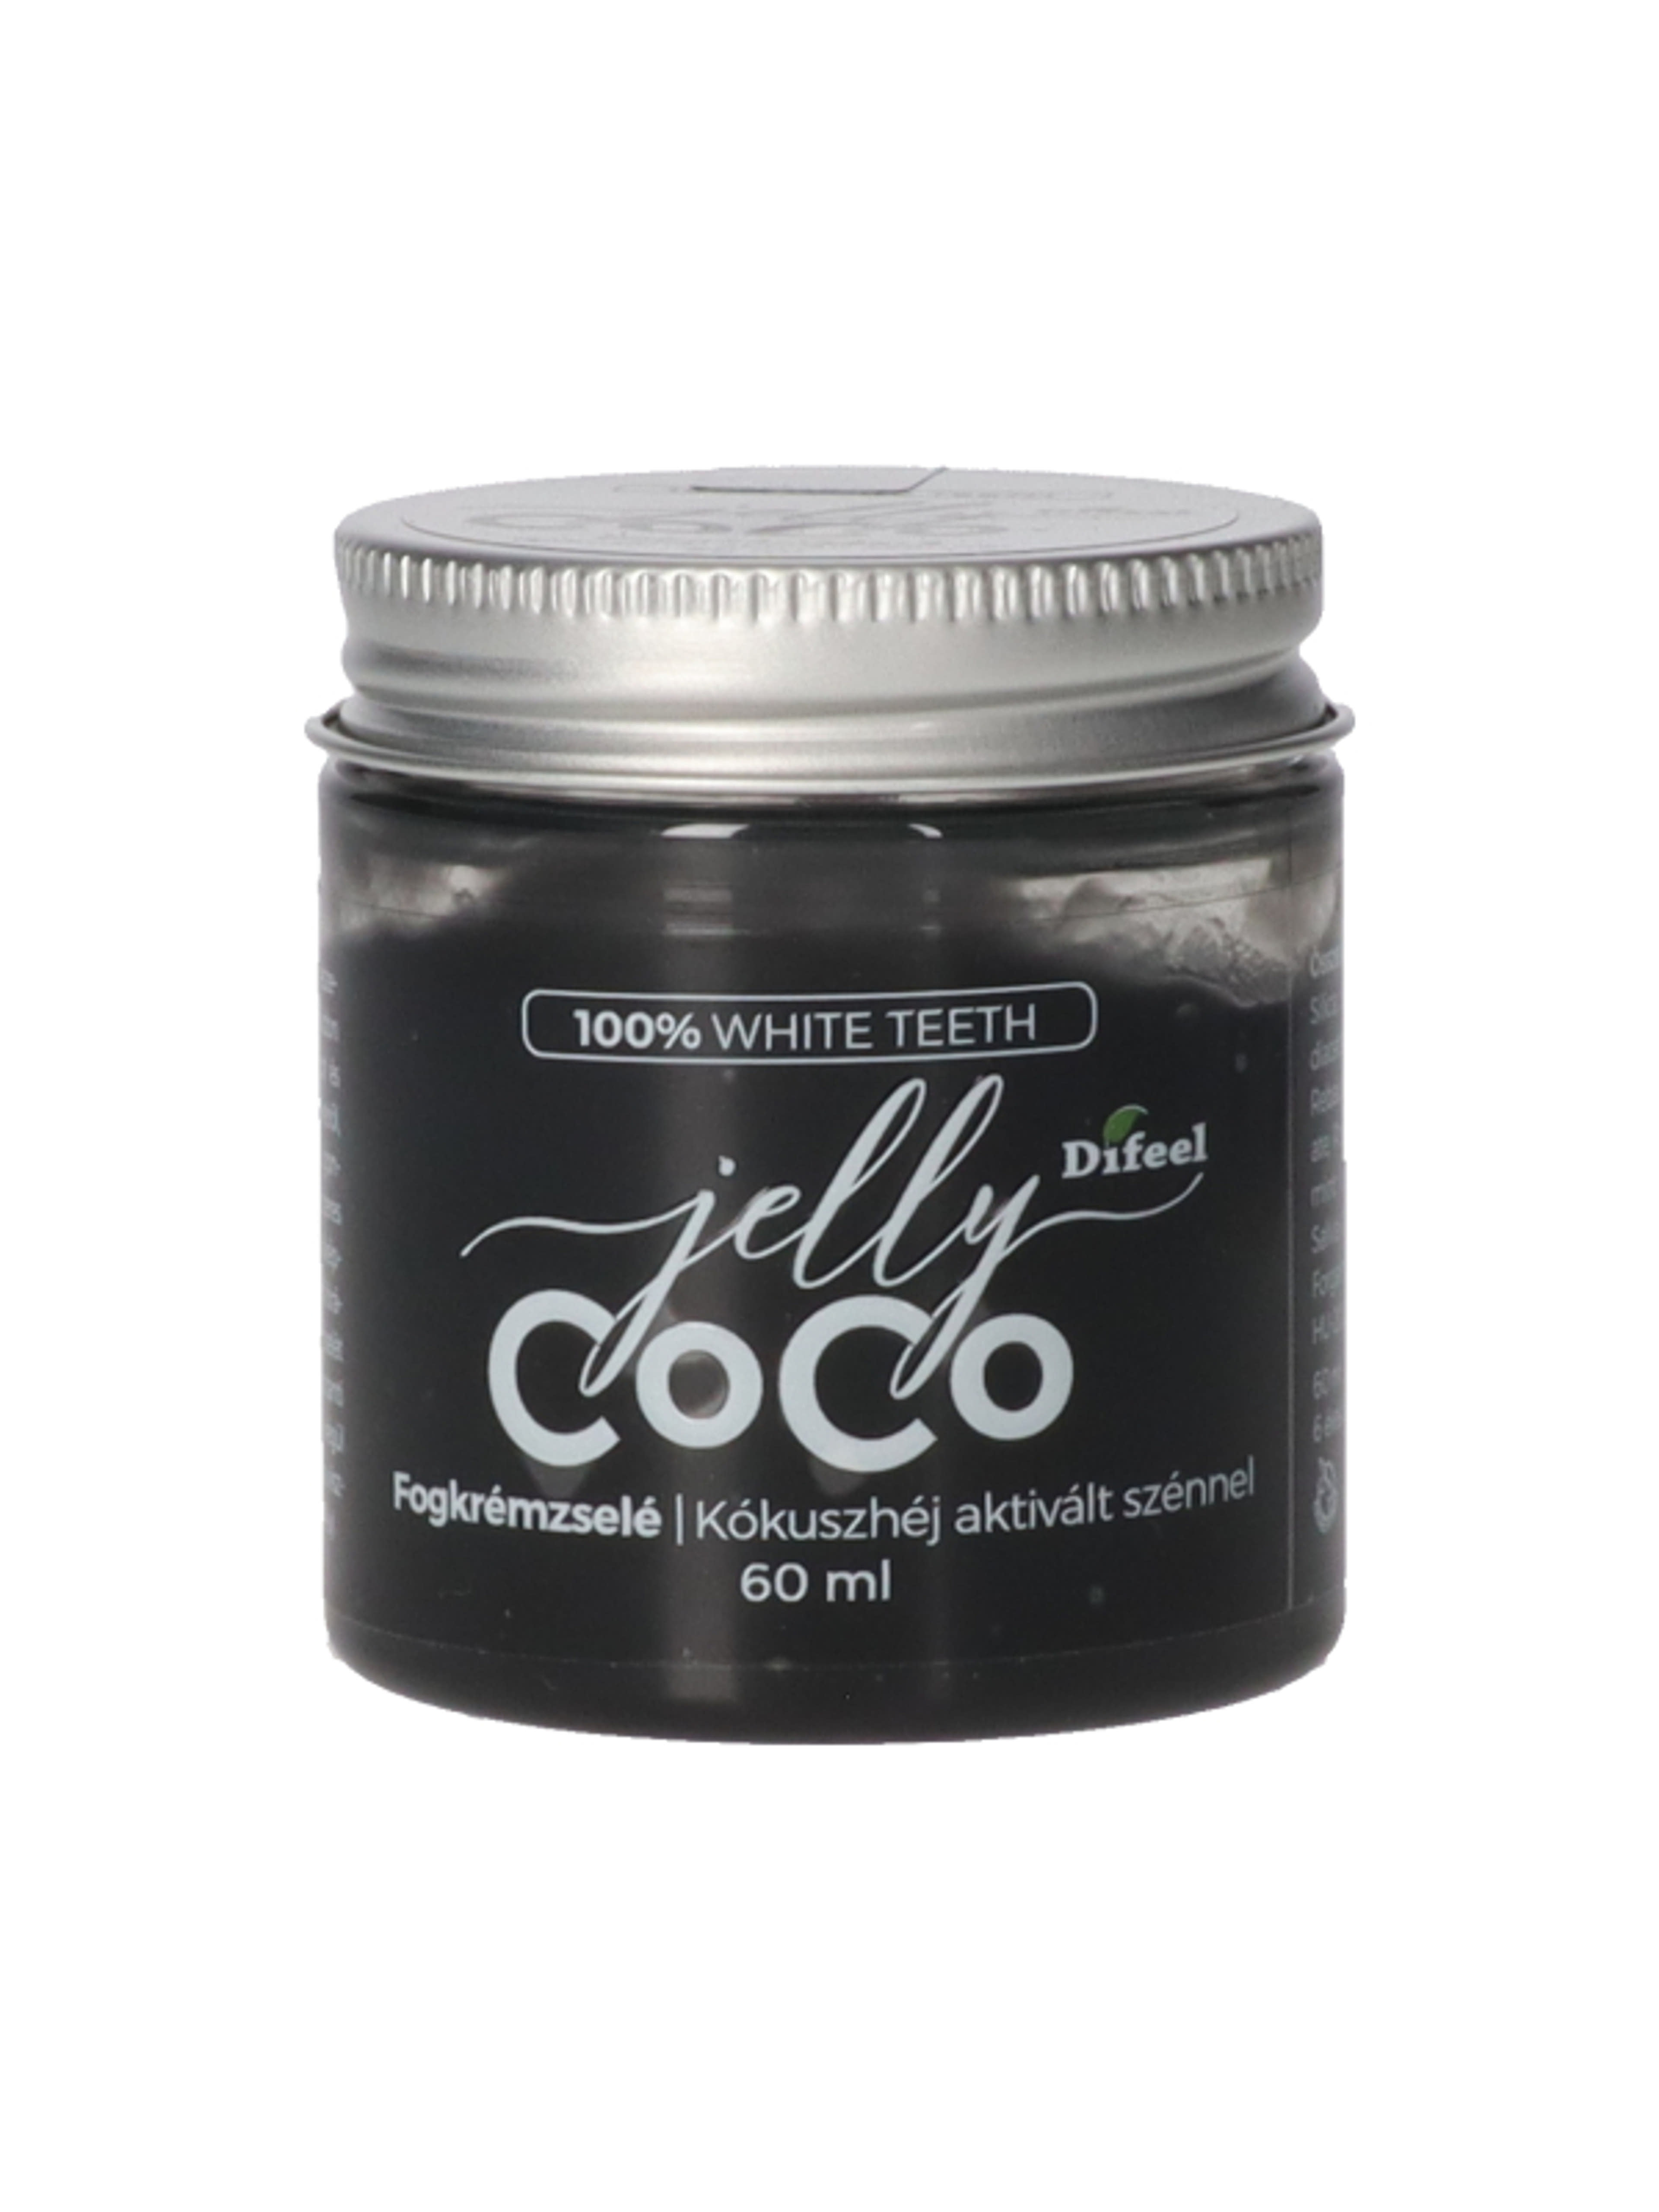 Difeel Lovely Coco fogkrémzselé - 75 ml-1